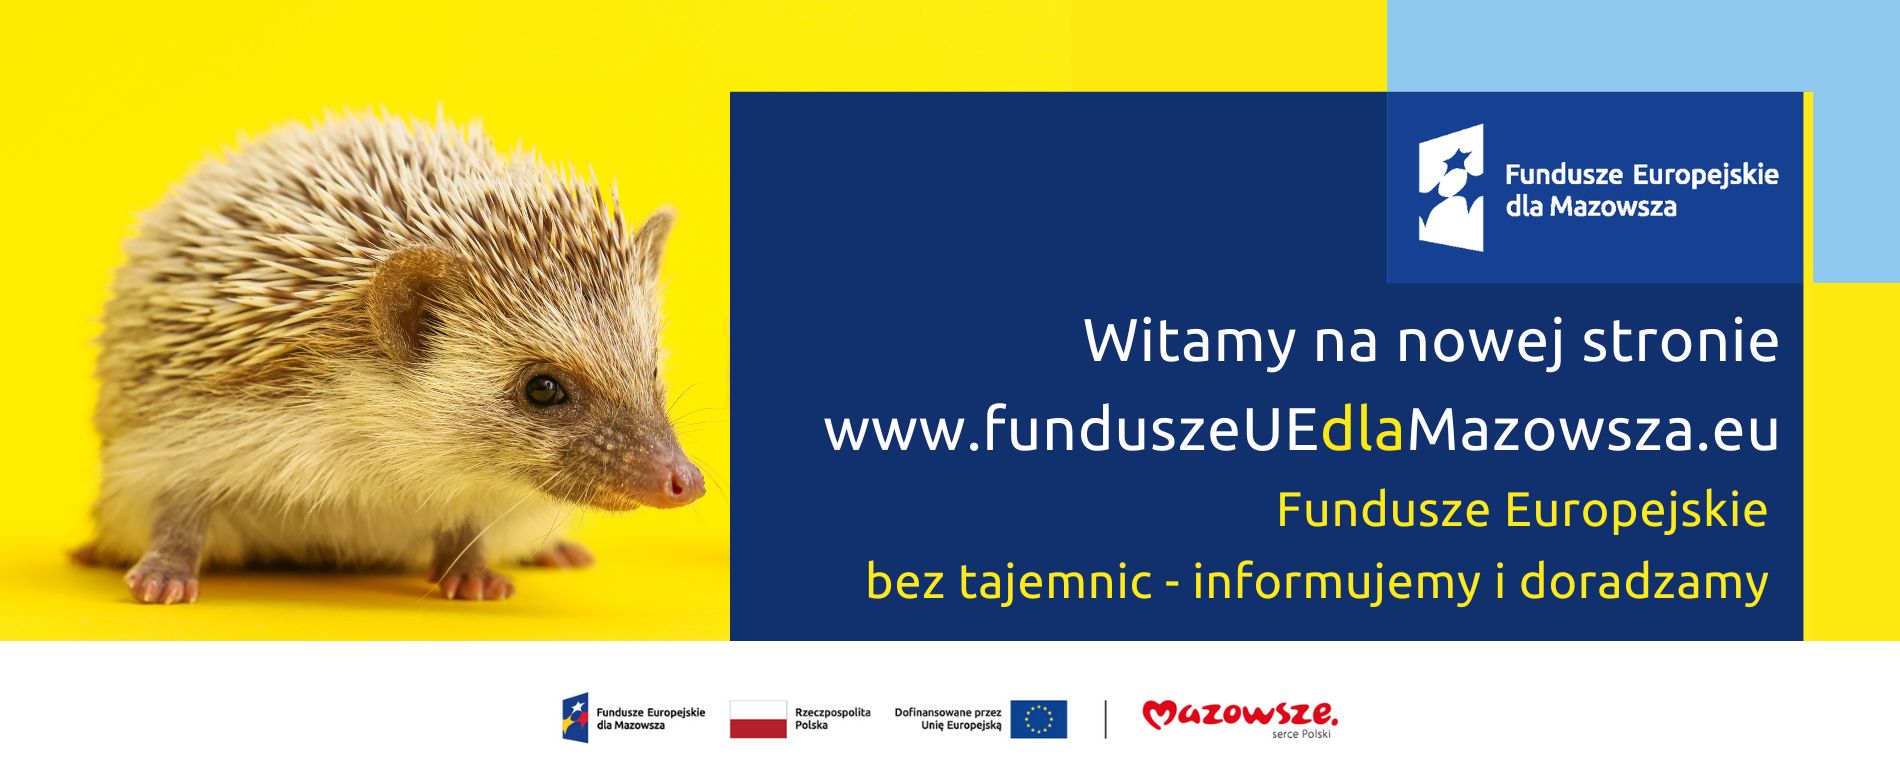 Grafika przedstawia napis Witamy na nowej stronie www.funduszeUEdlaMazowsza.eu. Fundusze Europejskie bez tajemnic - informujemy i doradzamy 